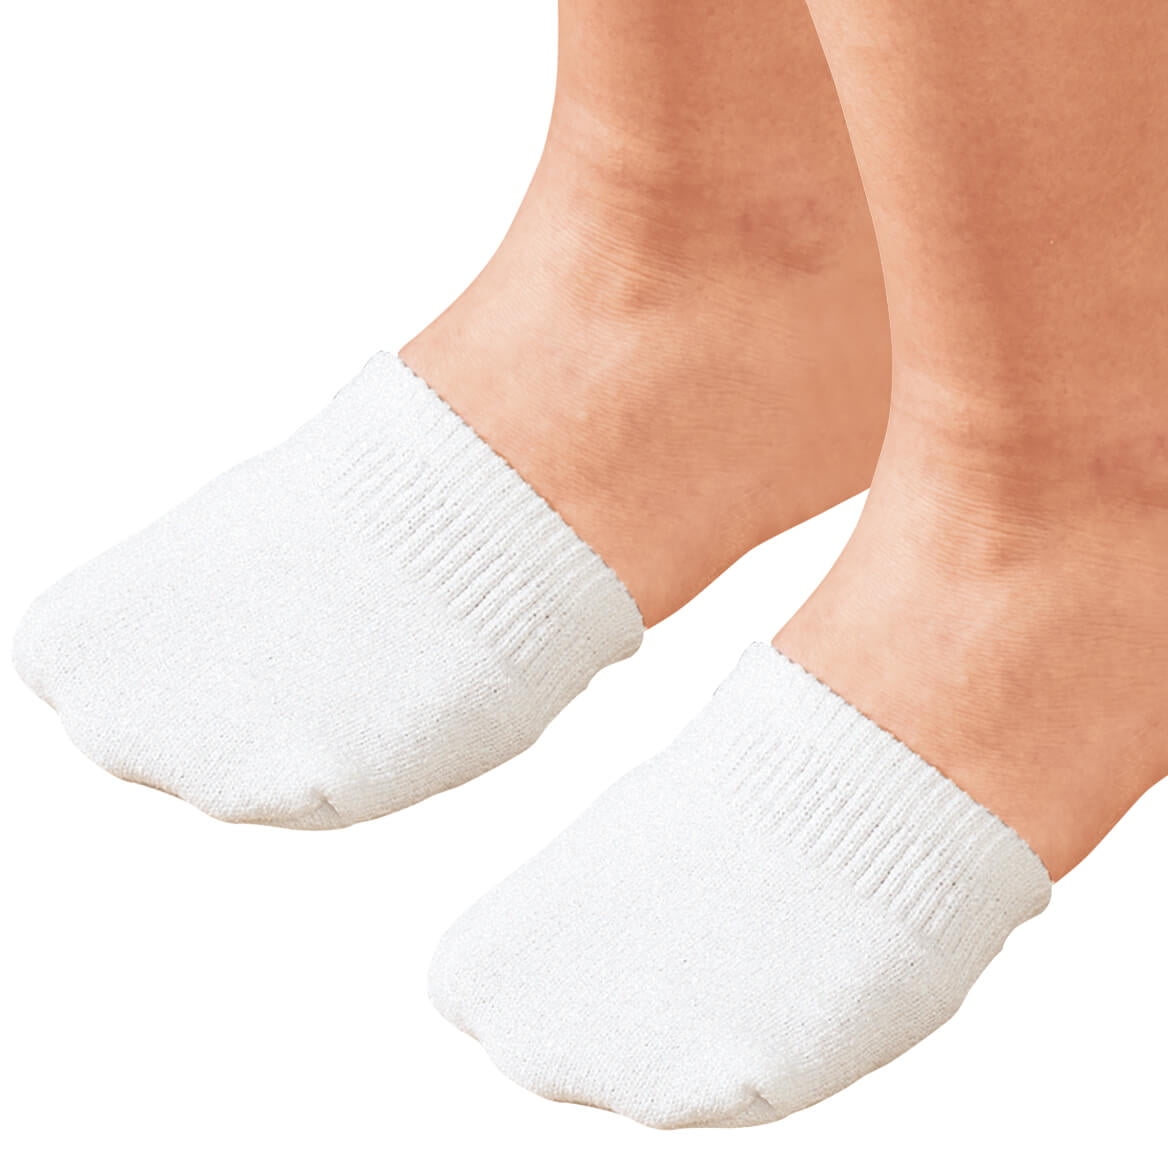 Toe Half Socks - 2 Pairs 